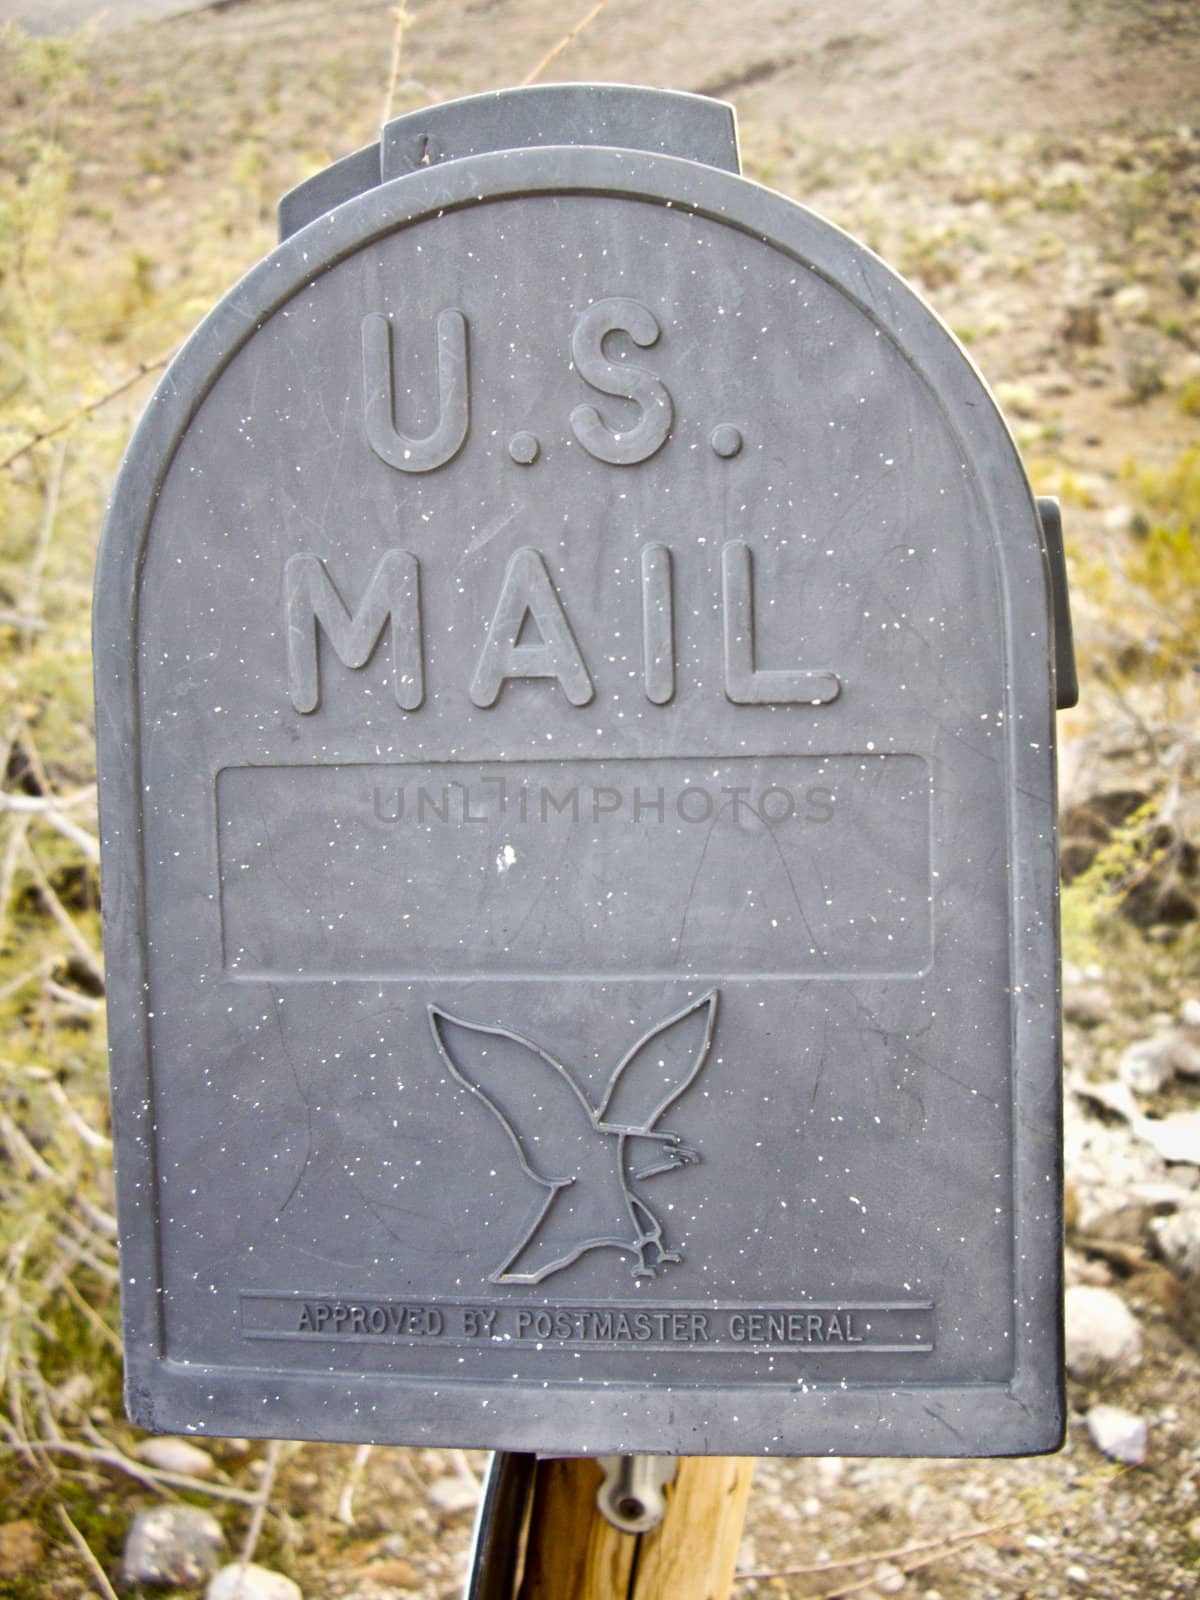 Mail Box in Arizona desert